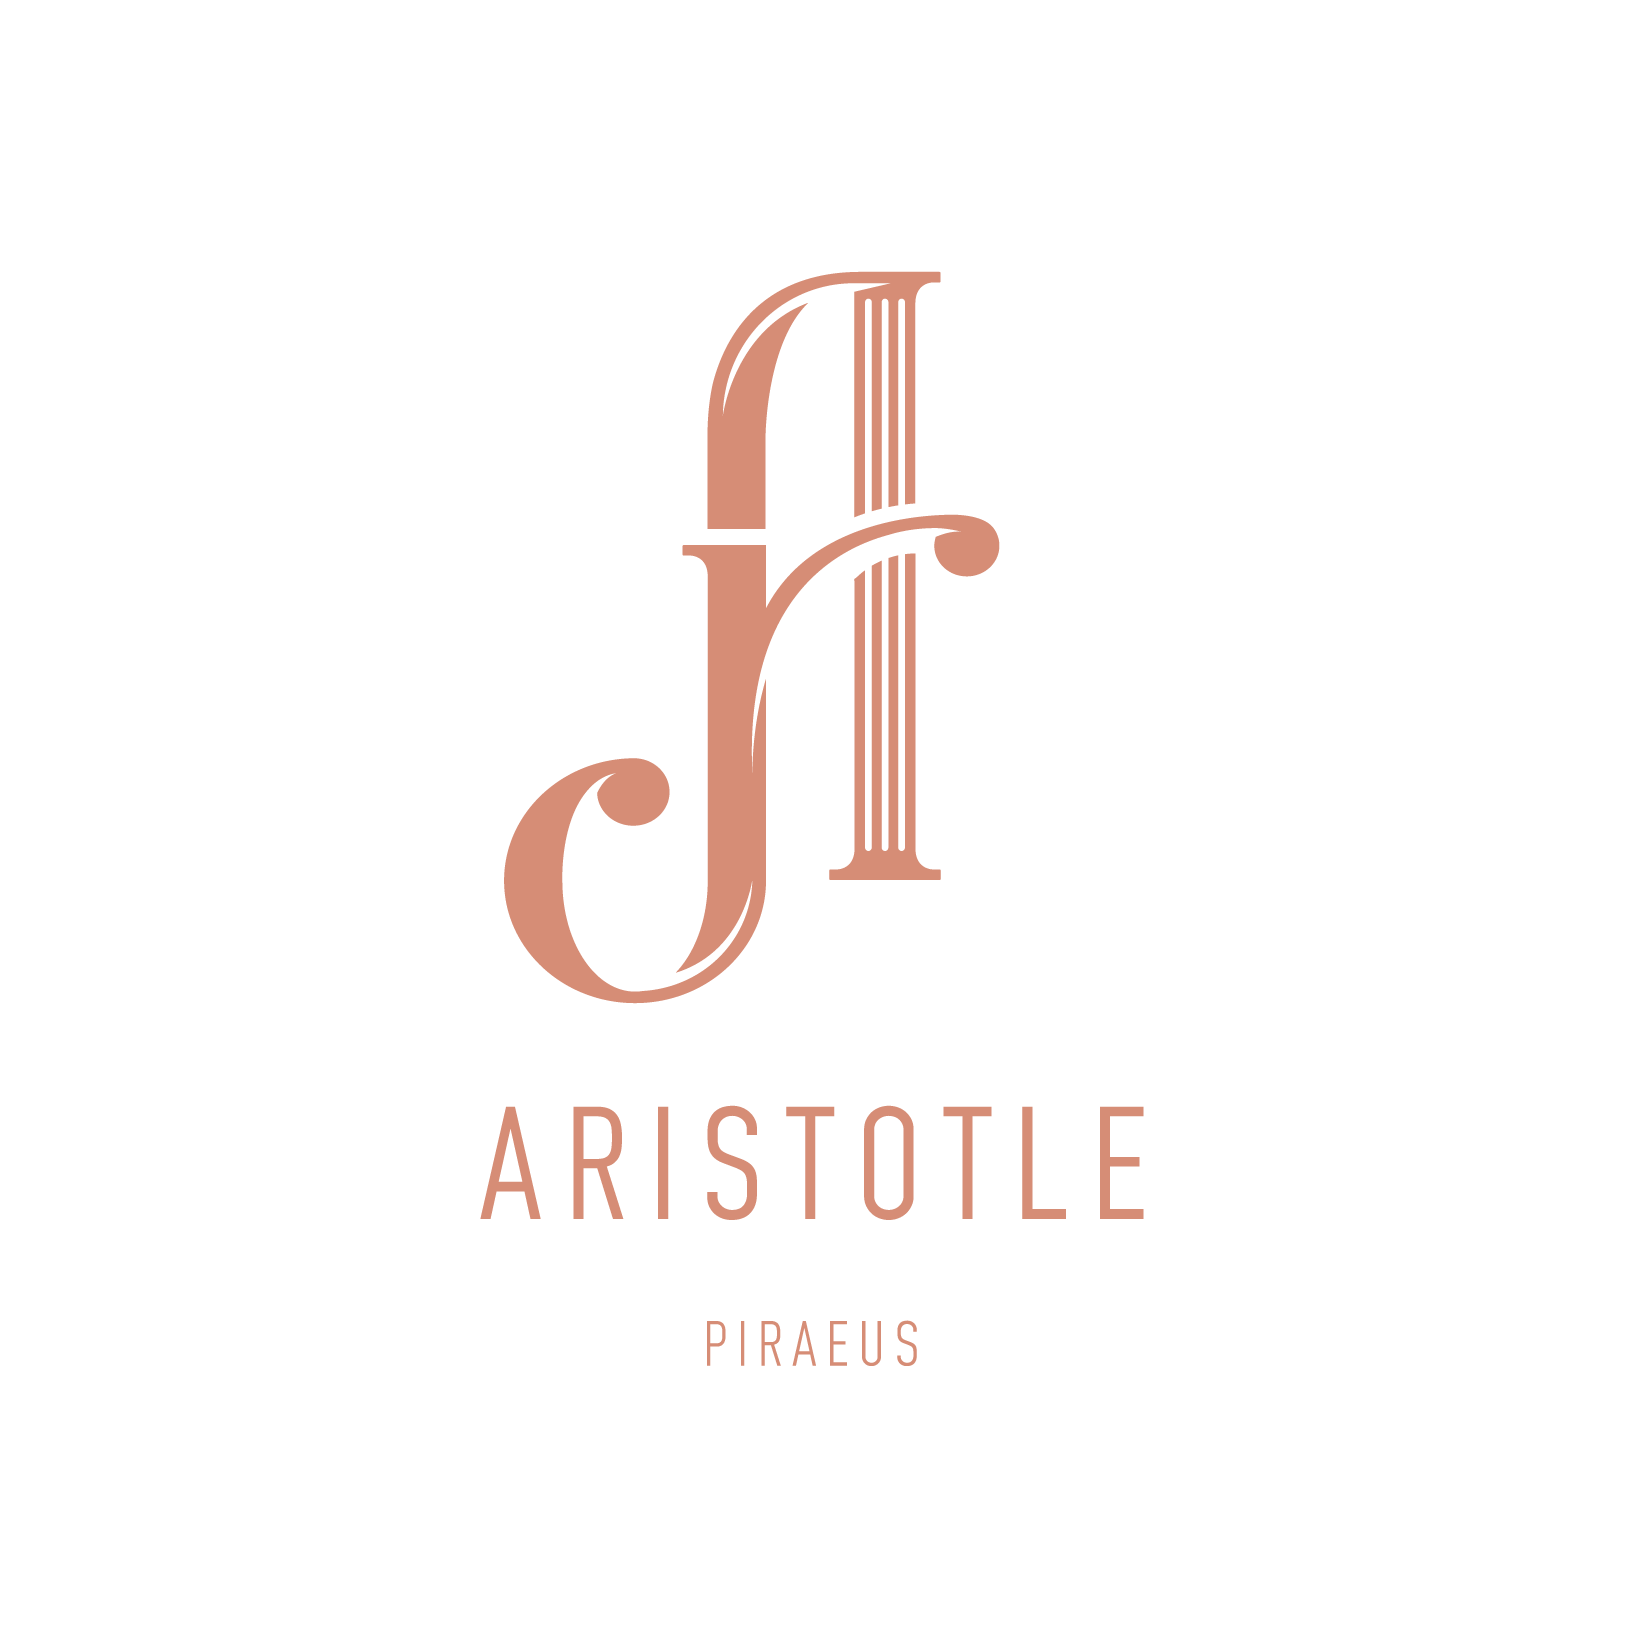 Aristotle 2c - Aristotle Piraeus - The Design Boutique -Aristotle 2c